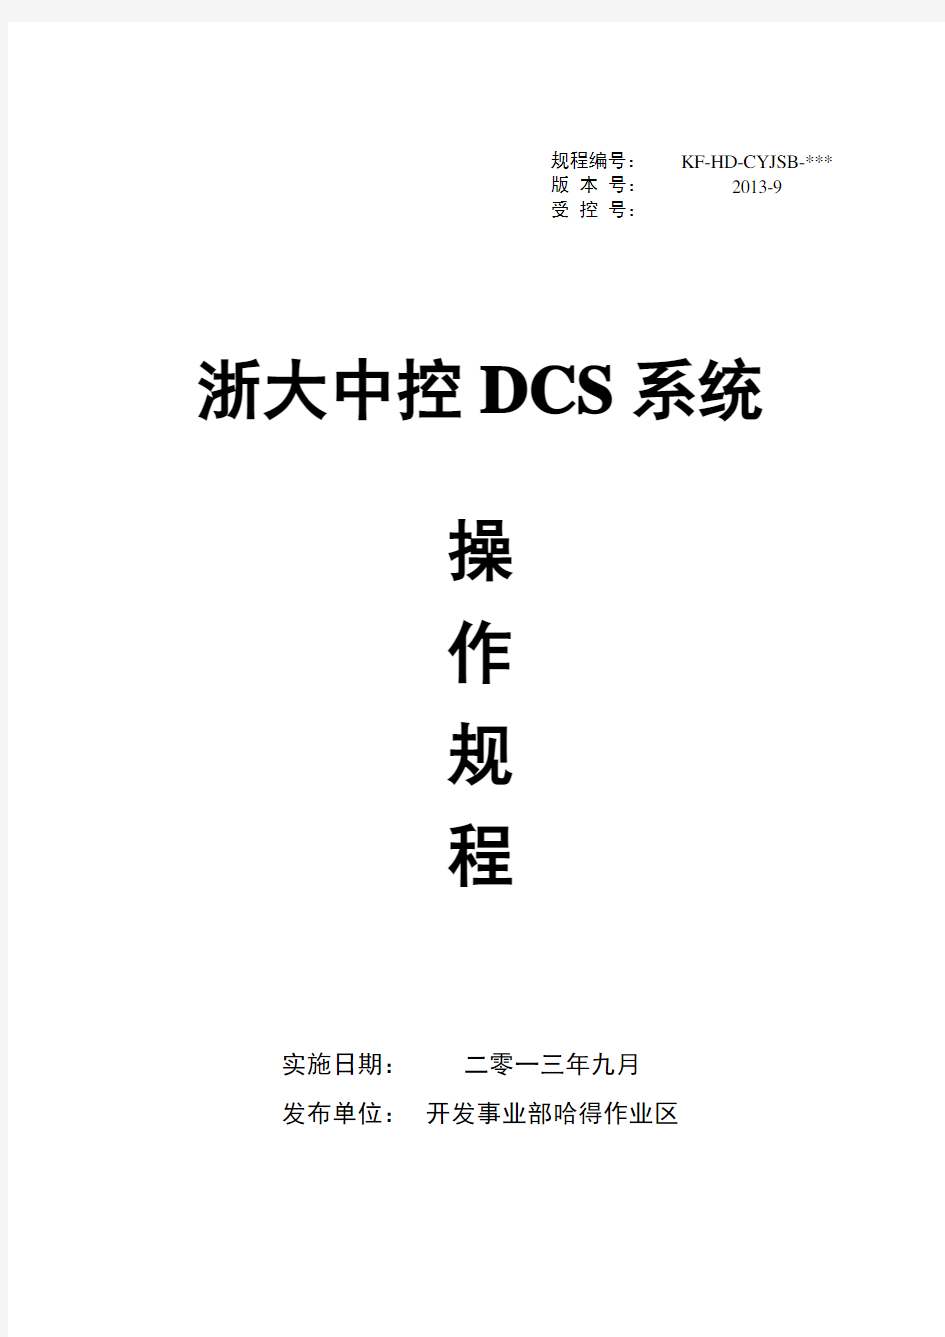 12.浙大中控DCS系统操作规程